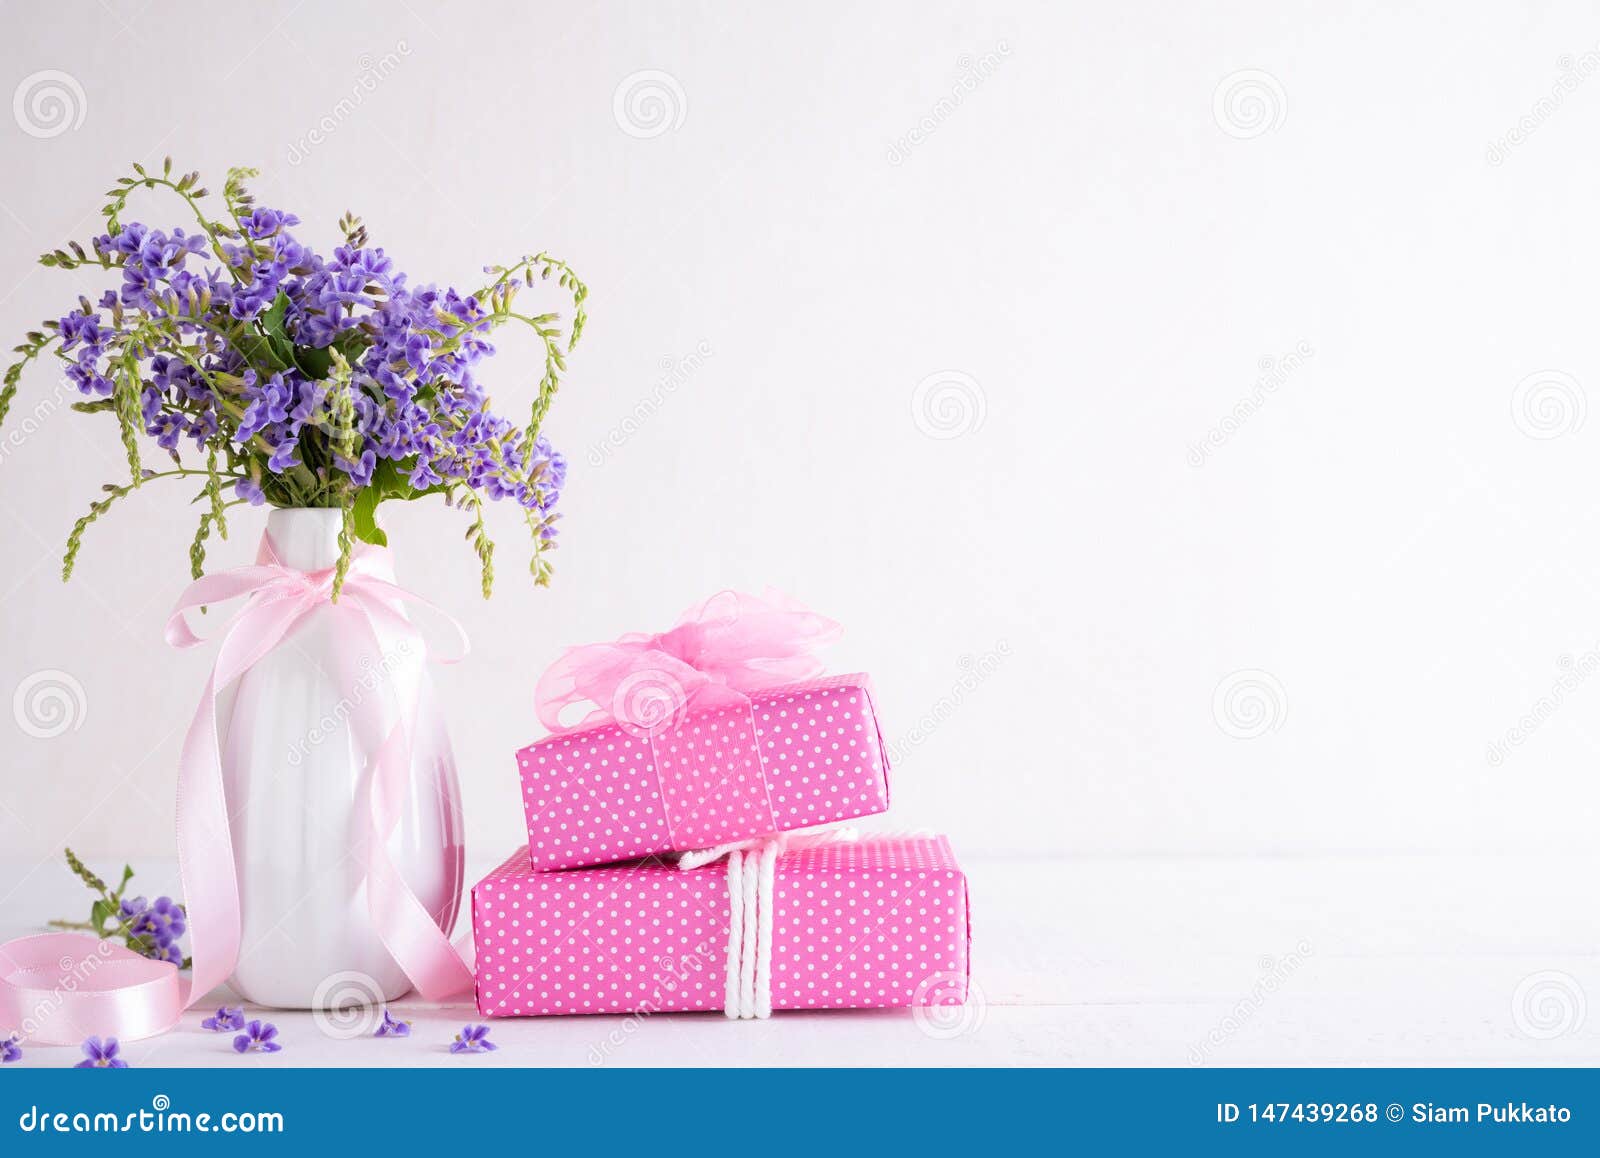 Hộp quà tặng ngày của mẹ là sự lựa chọn tuyệt vời để thể hiện tình yêu và tri ân đến người mẹ của bạn. Mở nắp hộp, những sản phẩm chăm sóc sức khỏe và sắc đẹp độc đáo sẽ đem lại nụ cười hạnh phúc cho người mẹ trong ngày đặc biệt này.